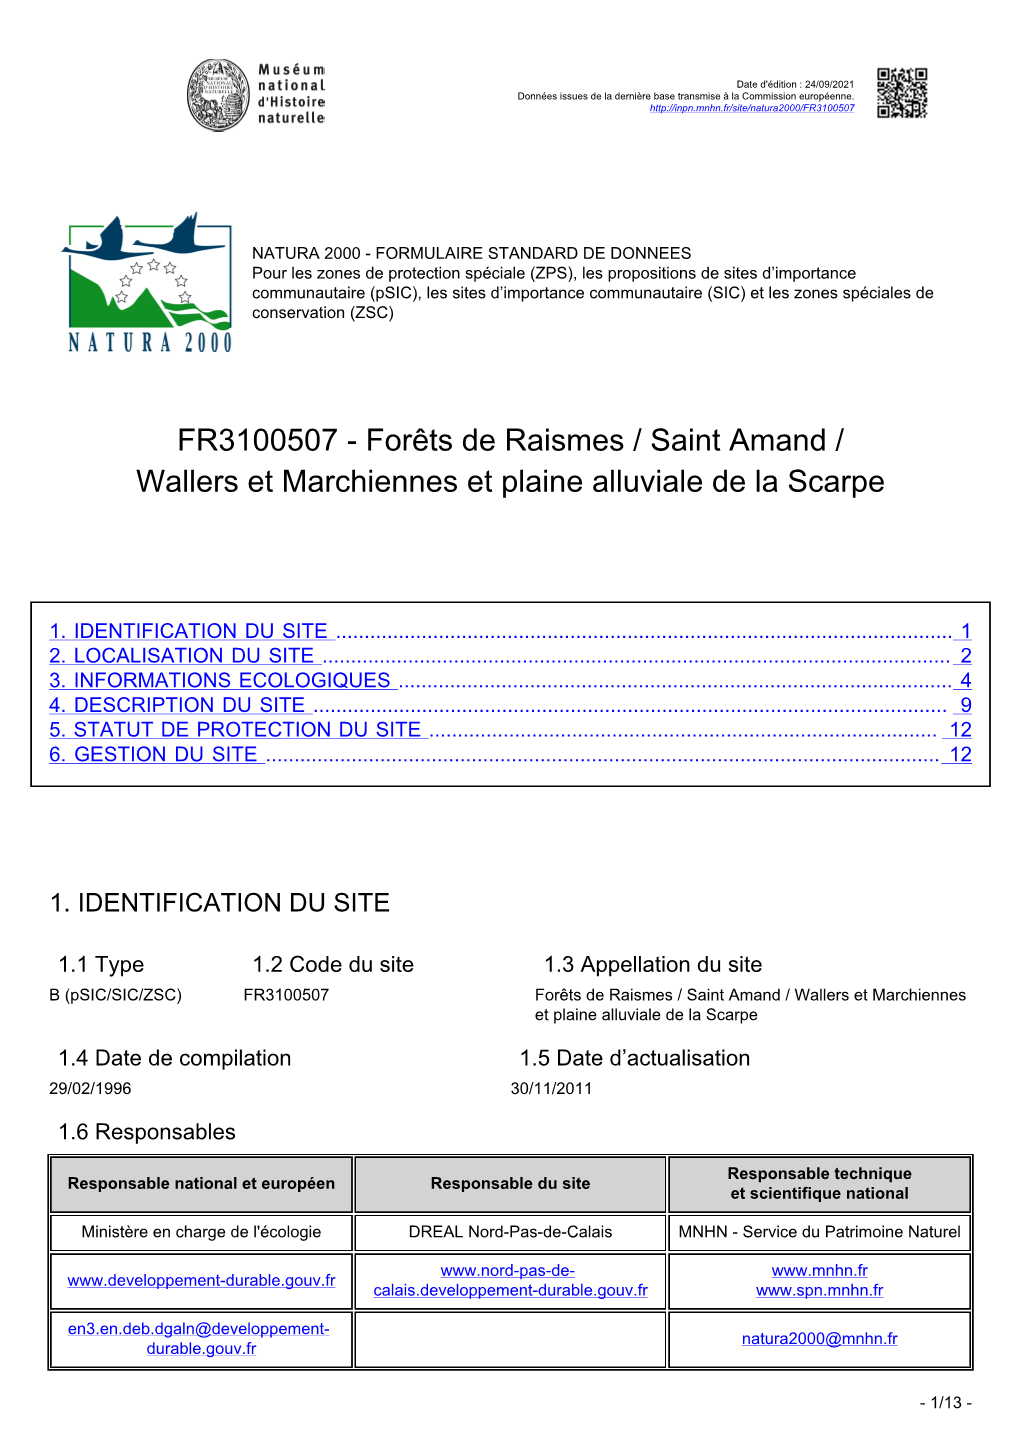 Forêts De Raismes / Saint Amand / Wallers Et Marchiennes Et Plaine Alluviale De La Scarpe